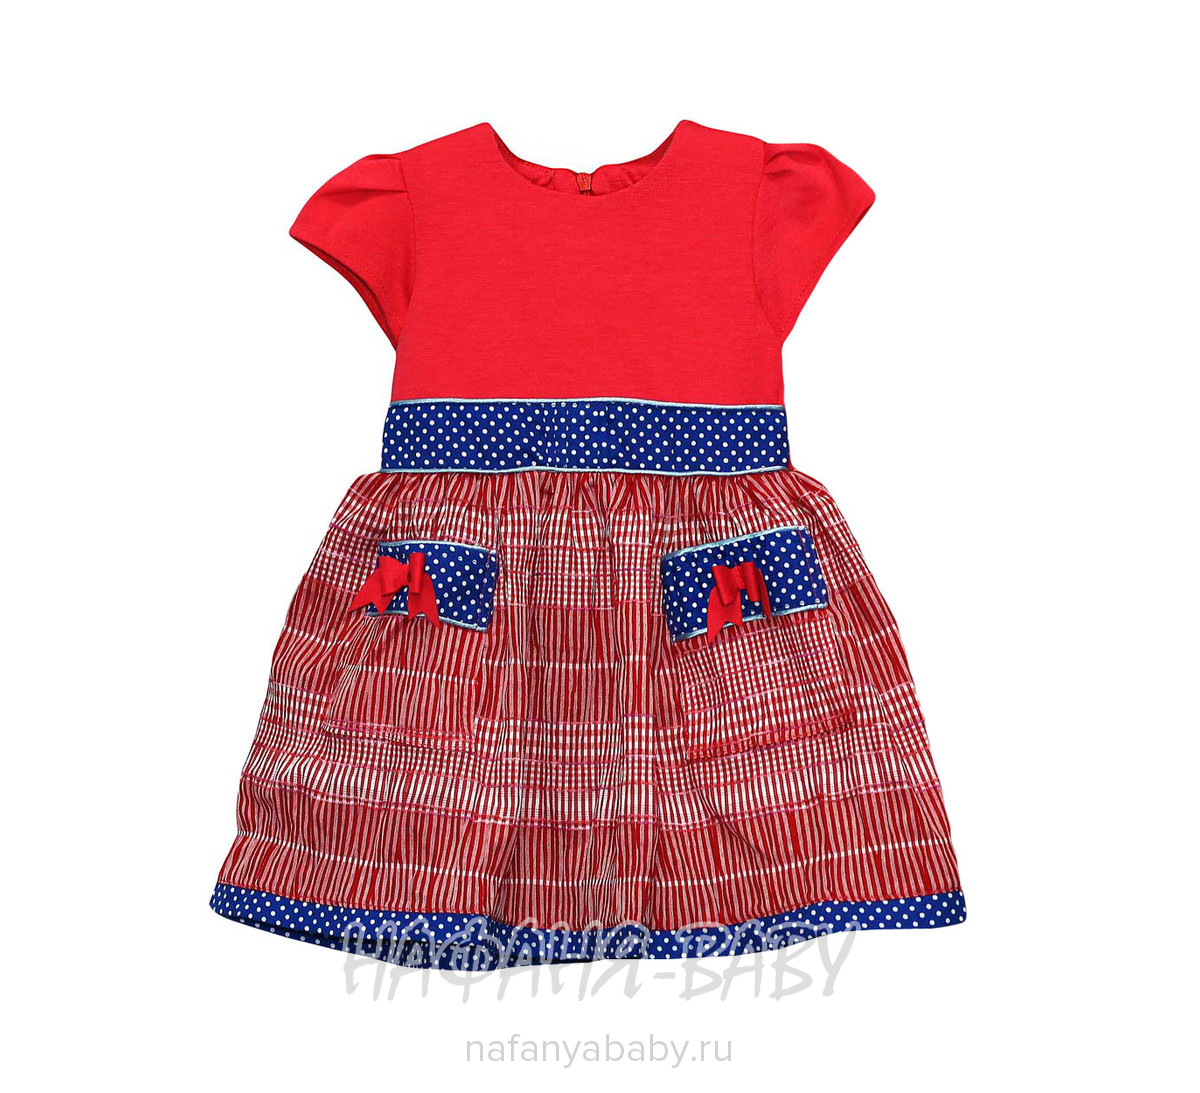 Детское платье KGMART арт: 2141, 1-4 года, 5-9 лет, оптом 